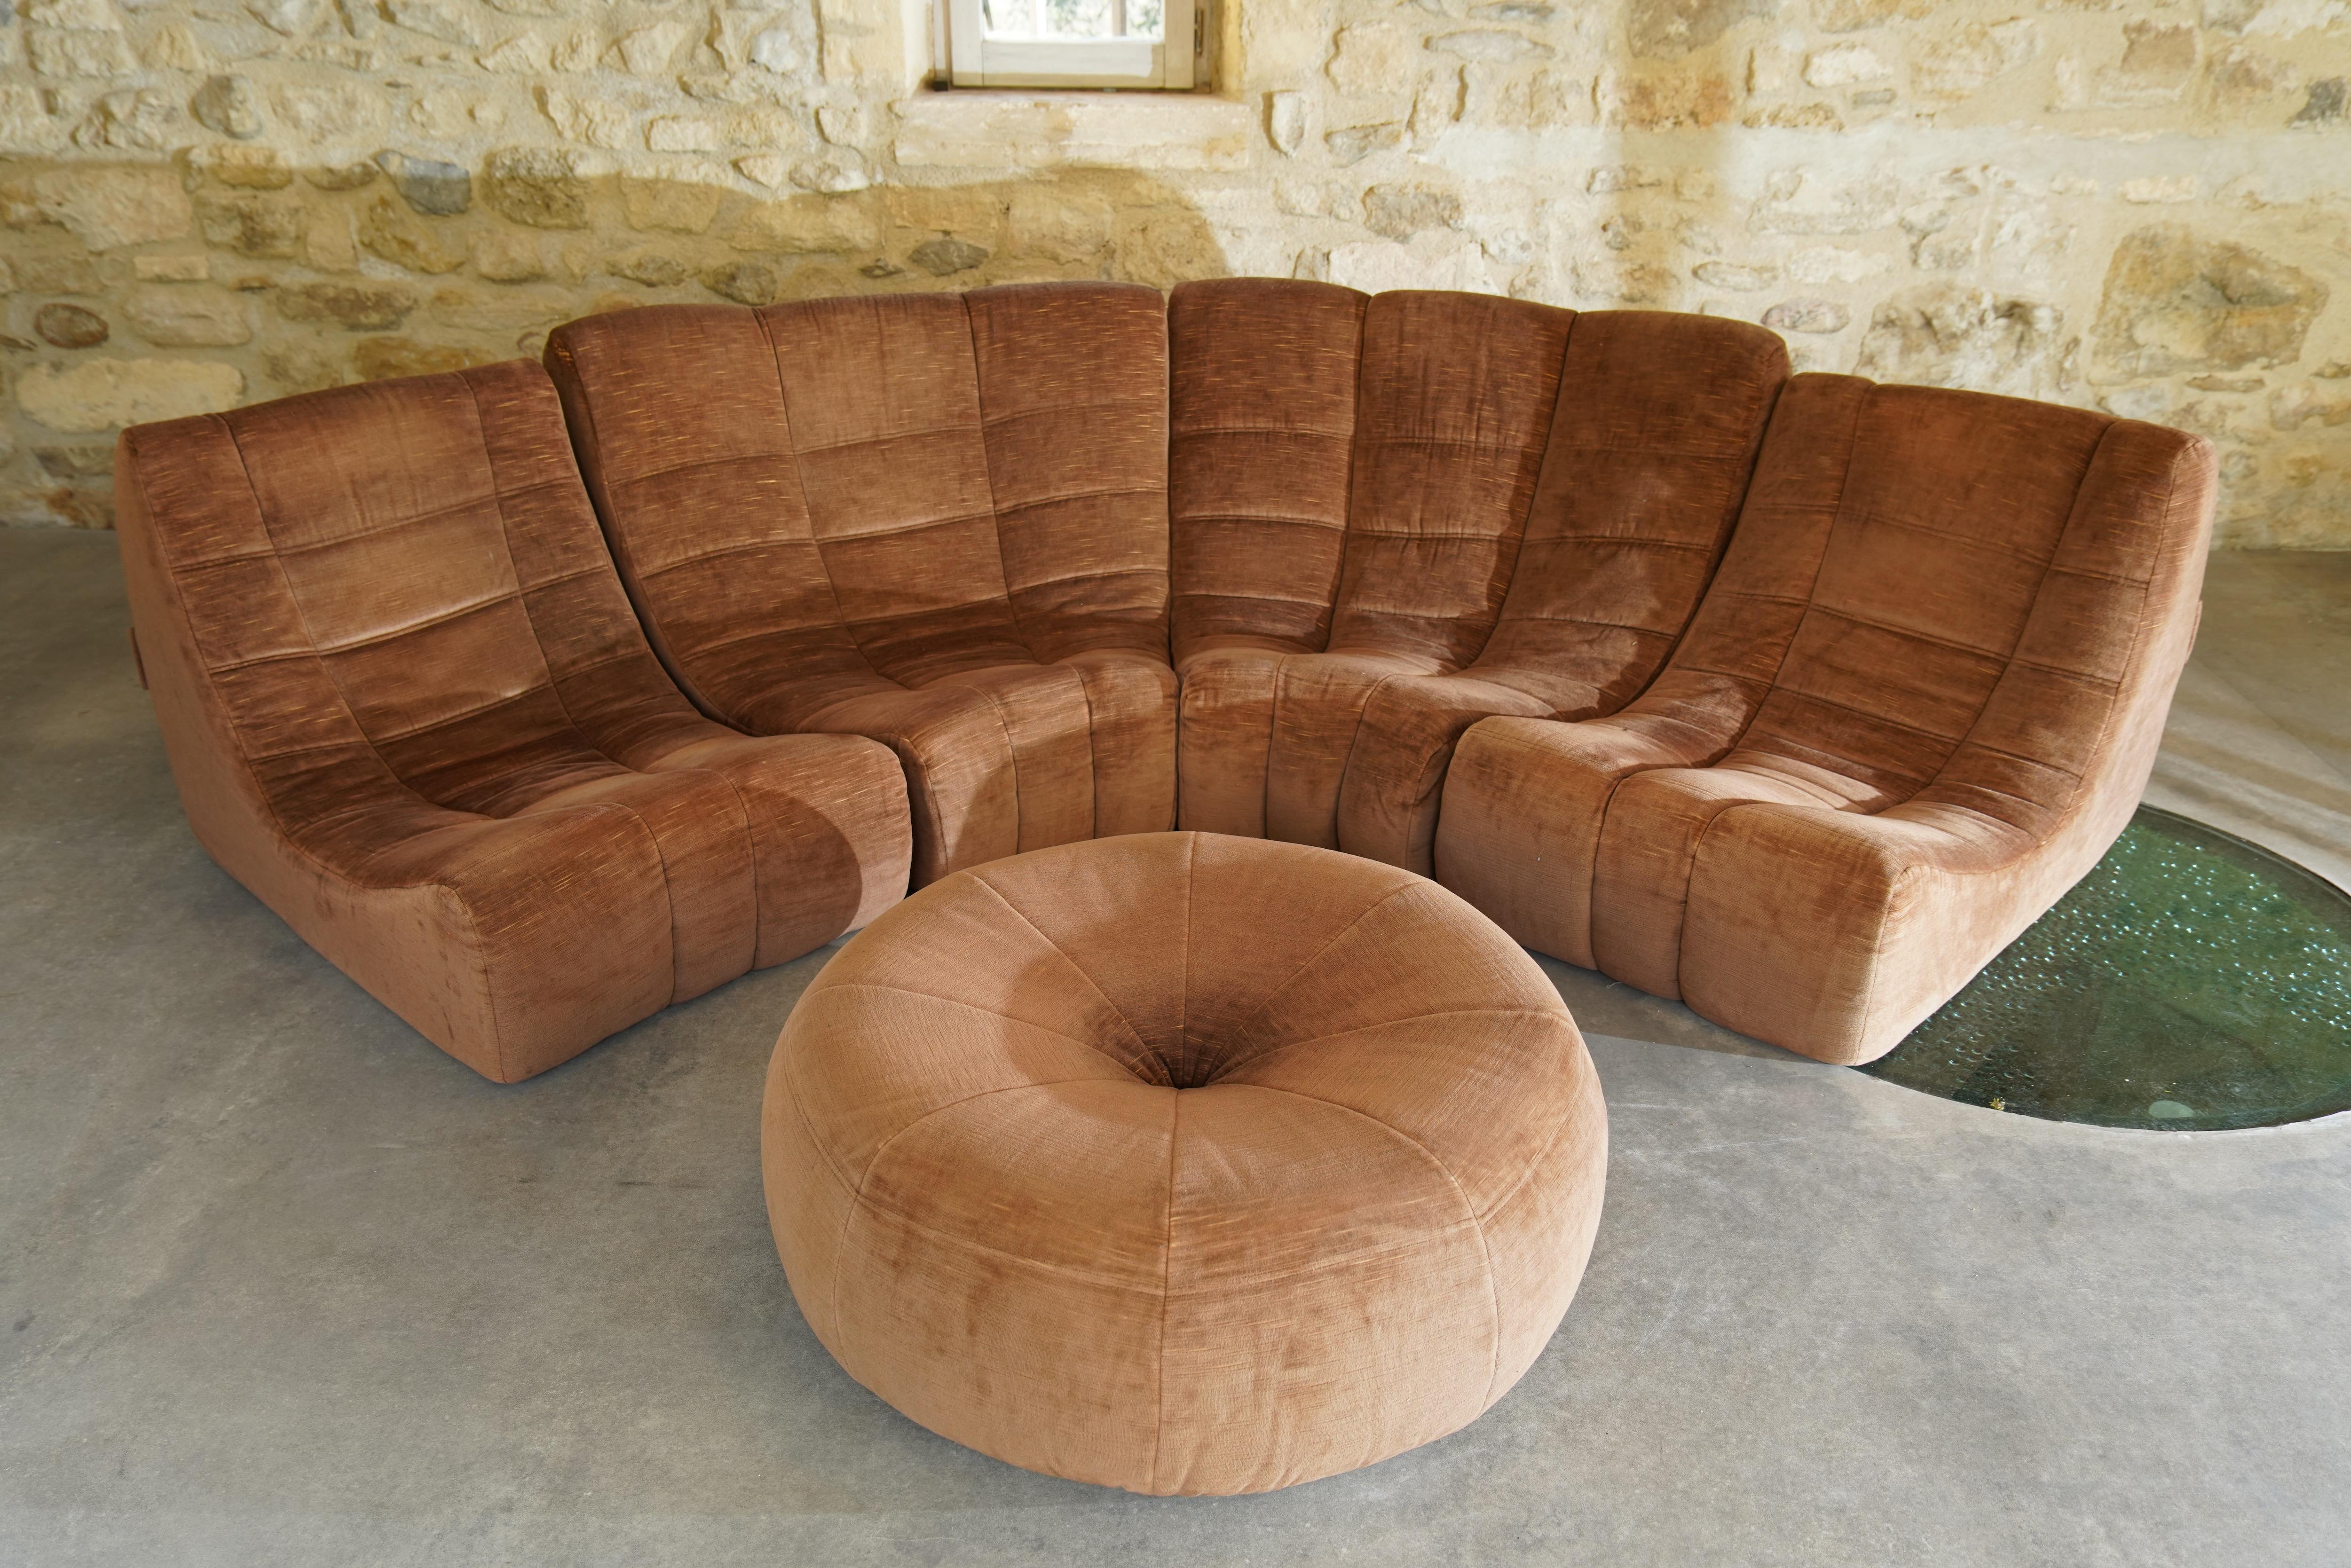 Seltenes Sofa 'Gilda' mit Ottomane, entworfen von Michel Ducaroy für Ligne Roset, aus braunem Samt. Das Set besteht aus 4 miteinander verbundenen Stühlen und 1 selten gesehenen Ottomane in passendem Stoff.

Das Sofa Gilda, das aus bequemen,